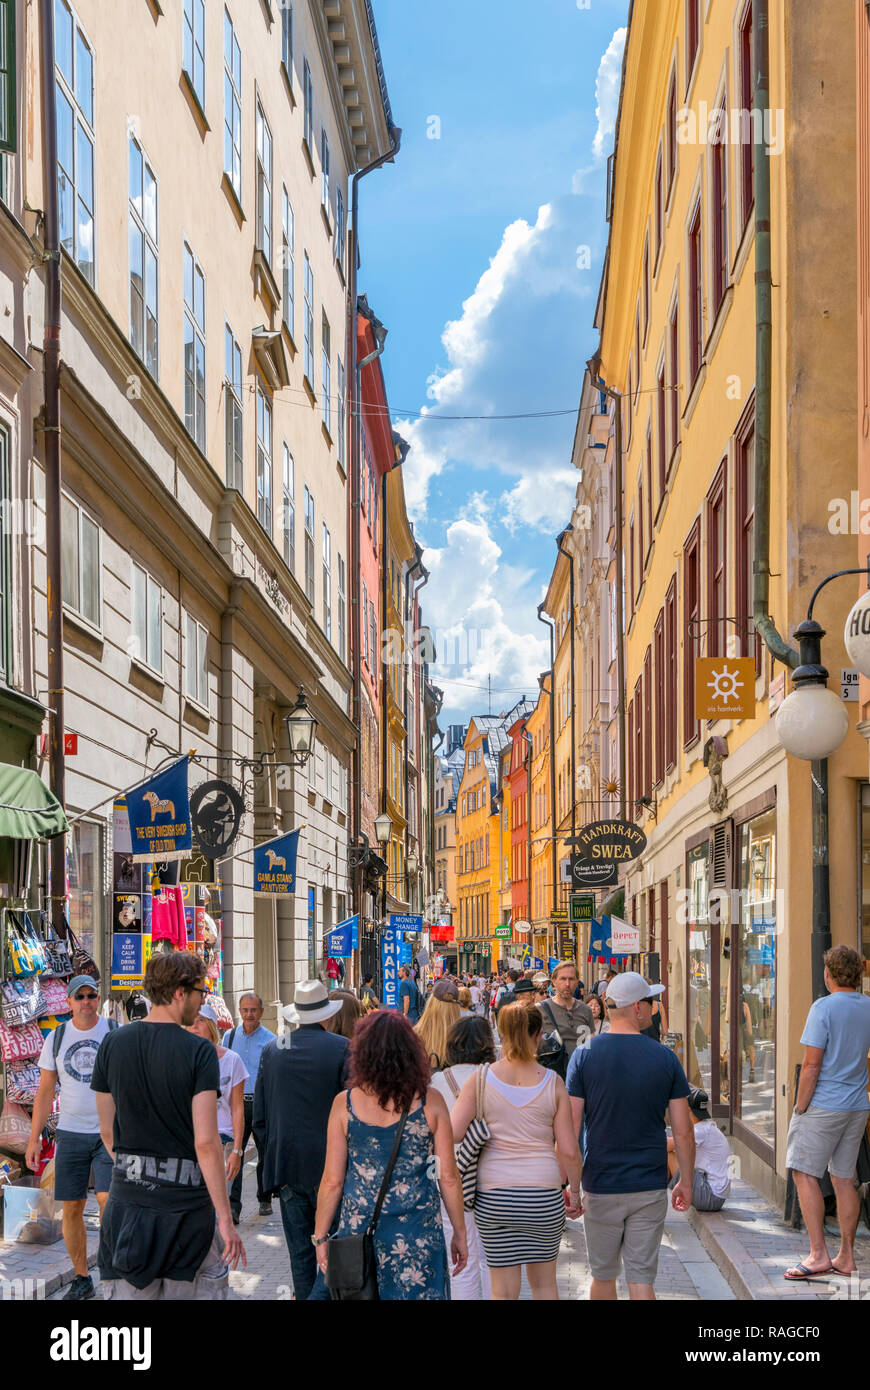 Les touristes sur Västerlånggatan, une rue principale à Gamla Stan (vieille ville), l'île de Stadsholmen, Stockholm, Suède Banque D'Images